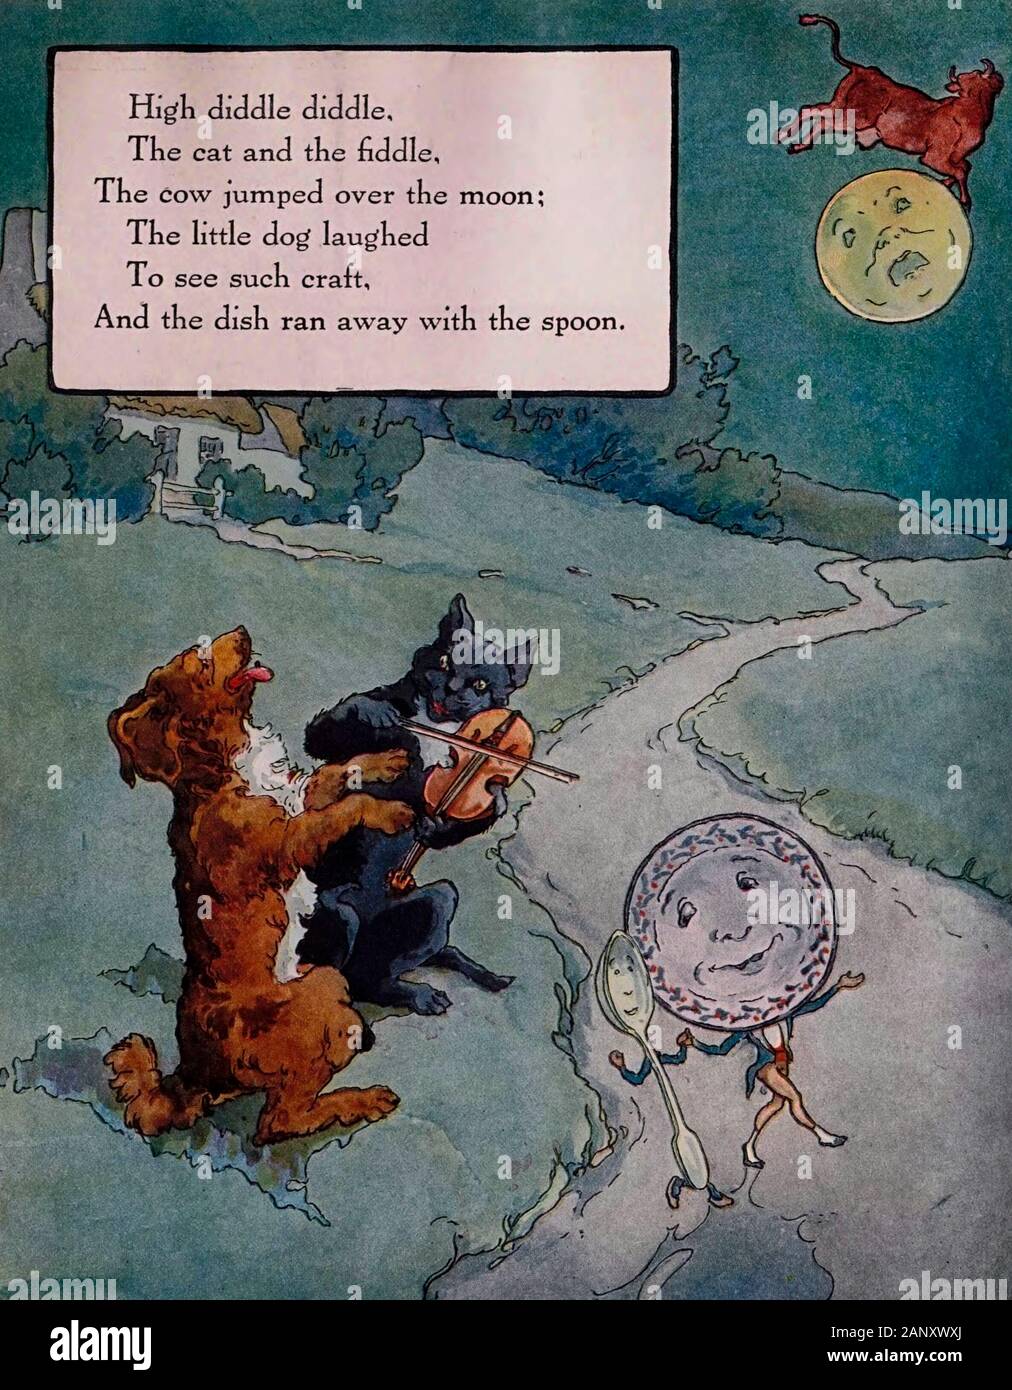 Diddle Diddle haut, le chat et le violon, la GC a sauté par-dessus la lune. The Little Dog Laughed pour voir ce type de bateau et le plat s'est enfui avec la cuillère - Vintage illustration de la comptine Banque D'Images